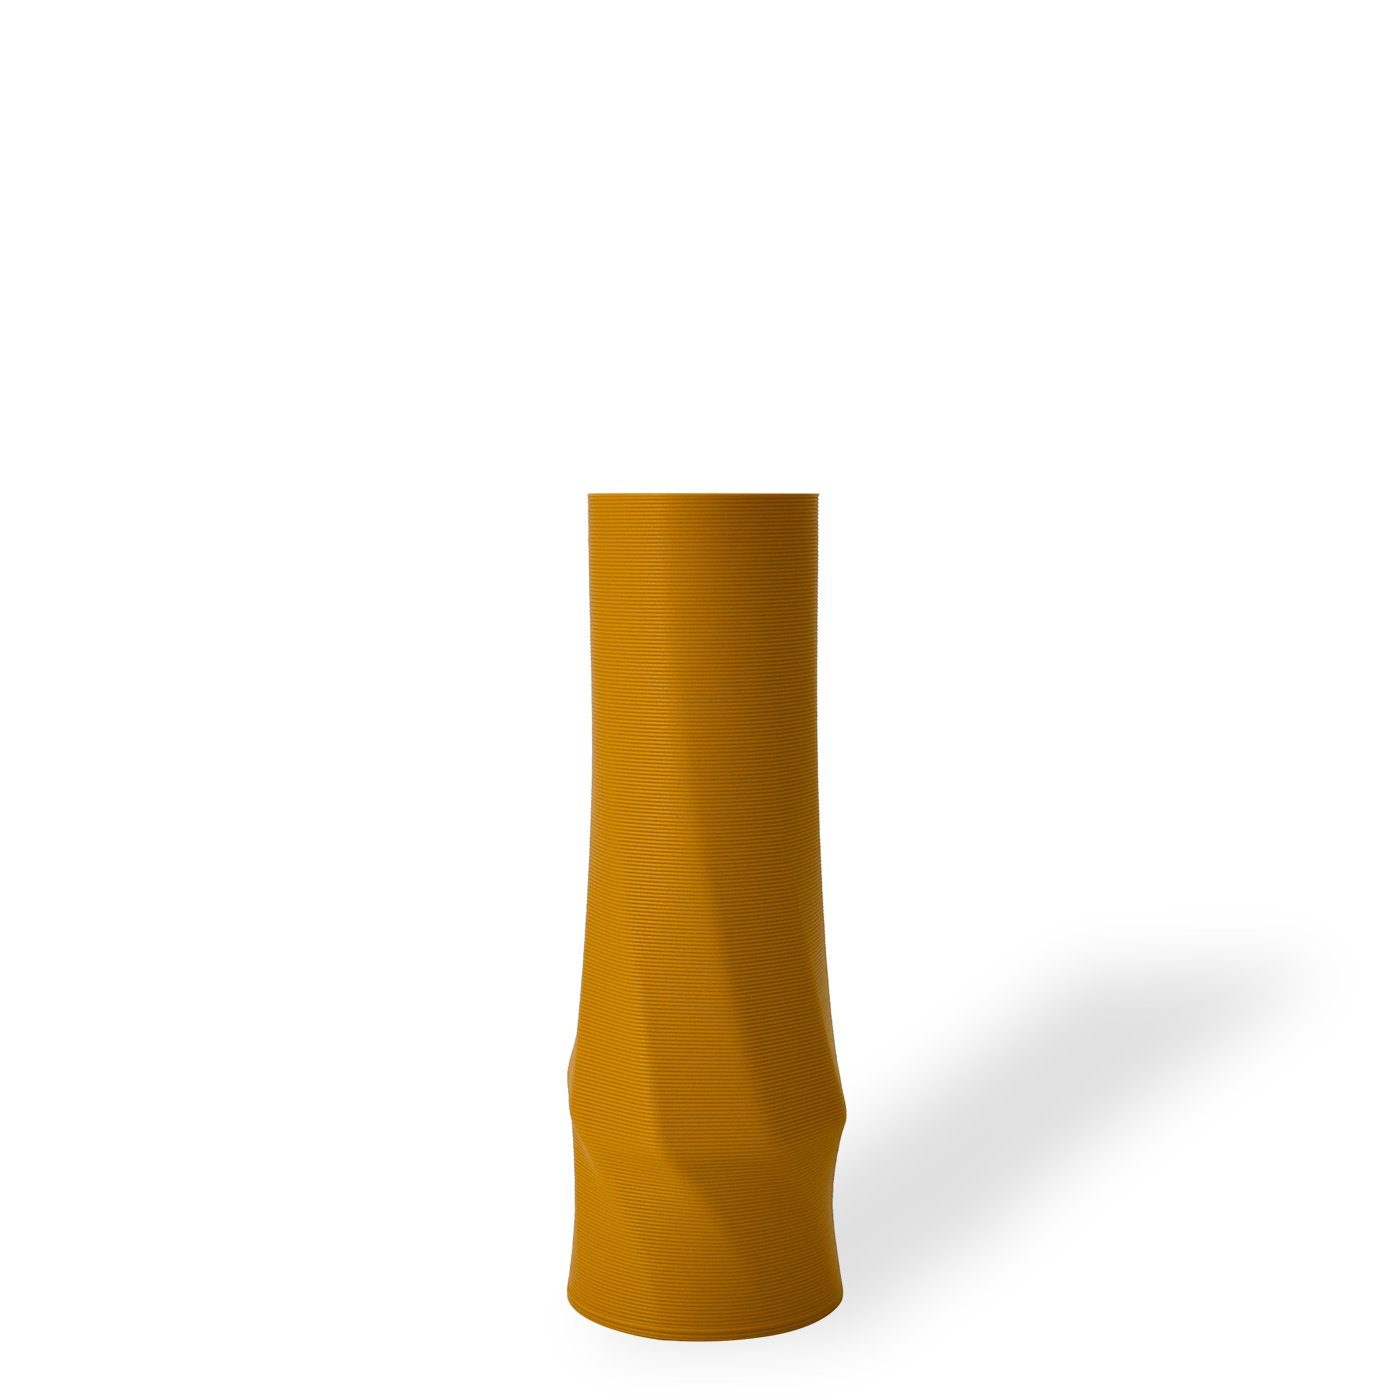 Shapes - Decorations Dekovase the vase - circle (basic), 3D Vasen, viele Farben, 100% 3D-Druck (Einzelmodell, 1 Vase), Wasserdicht; Leichte Struktur innerhalb des Materials (Rillung) Ocker (gelb)